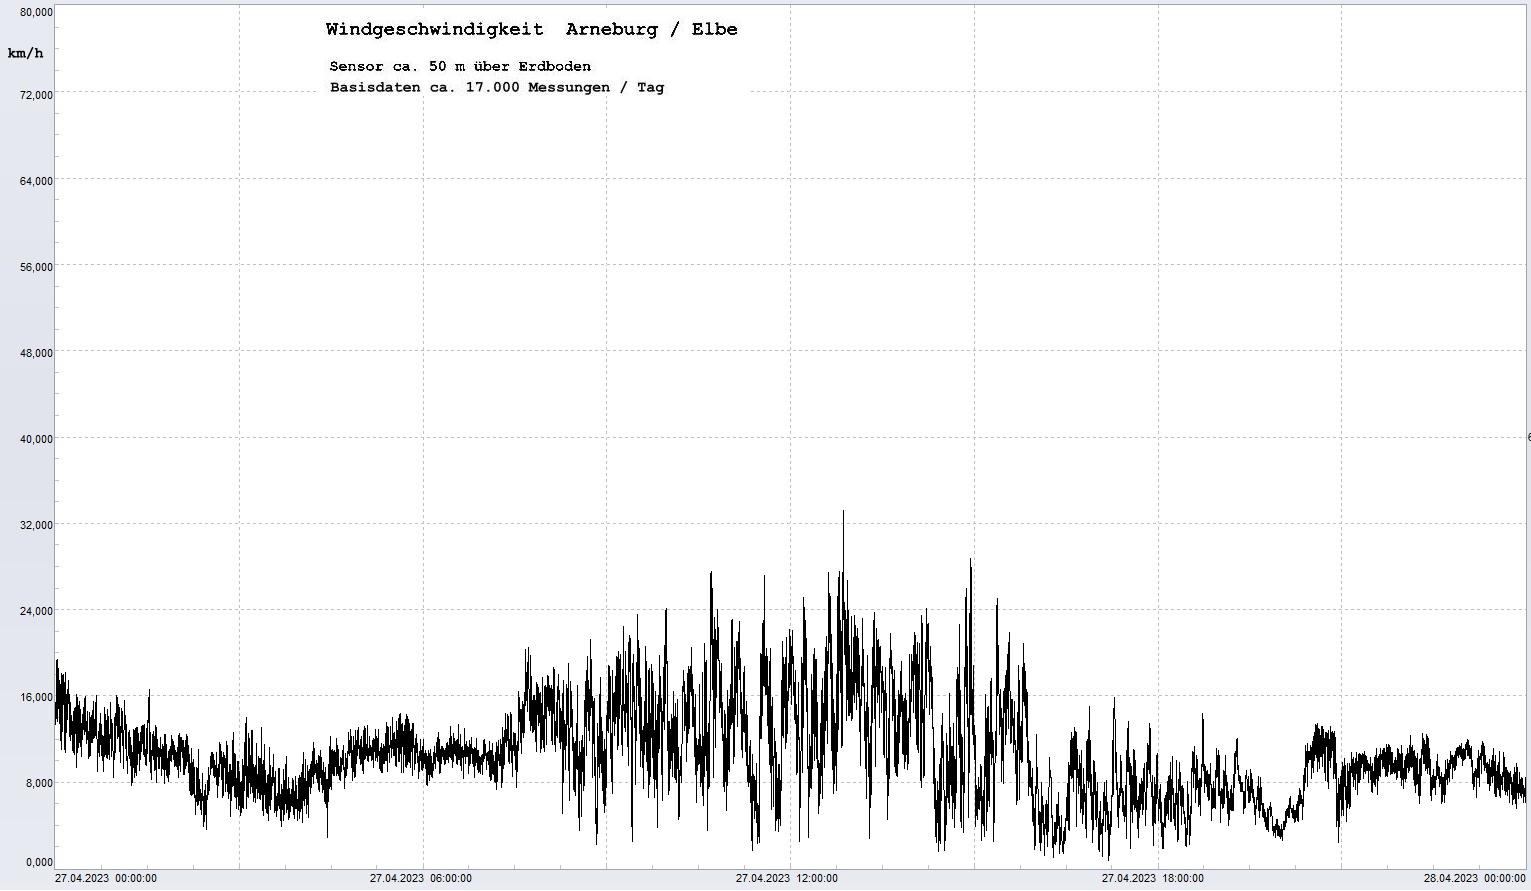 Arneburg Tages-Diagramm Winddaten, 27.04.2023
  Diagramm, Sensor auf Gebäude, ca. 50 m über Erdboden, Basis: 5s-Aufzeichnung